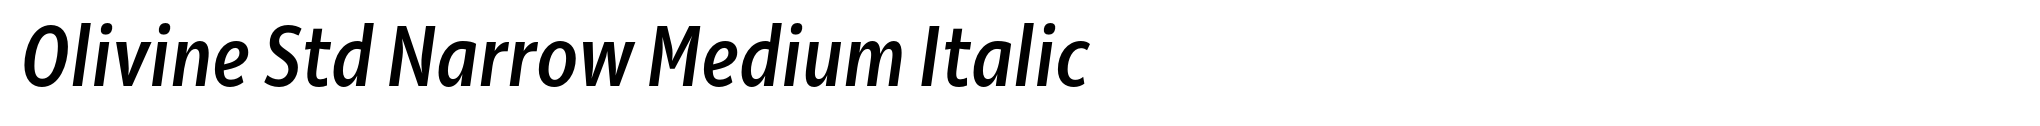 Olivine Std Narrow Medium Italic image